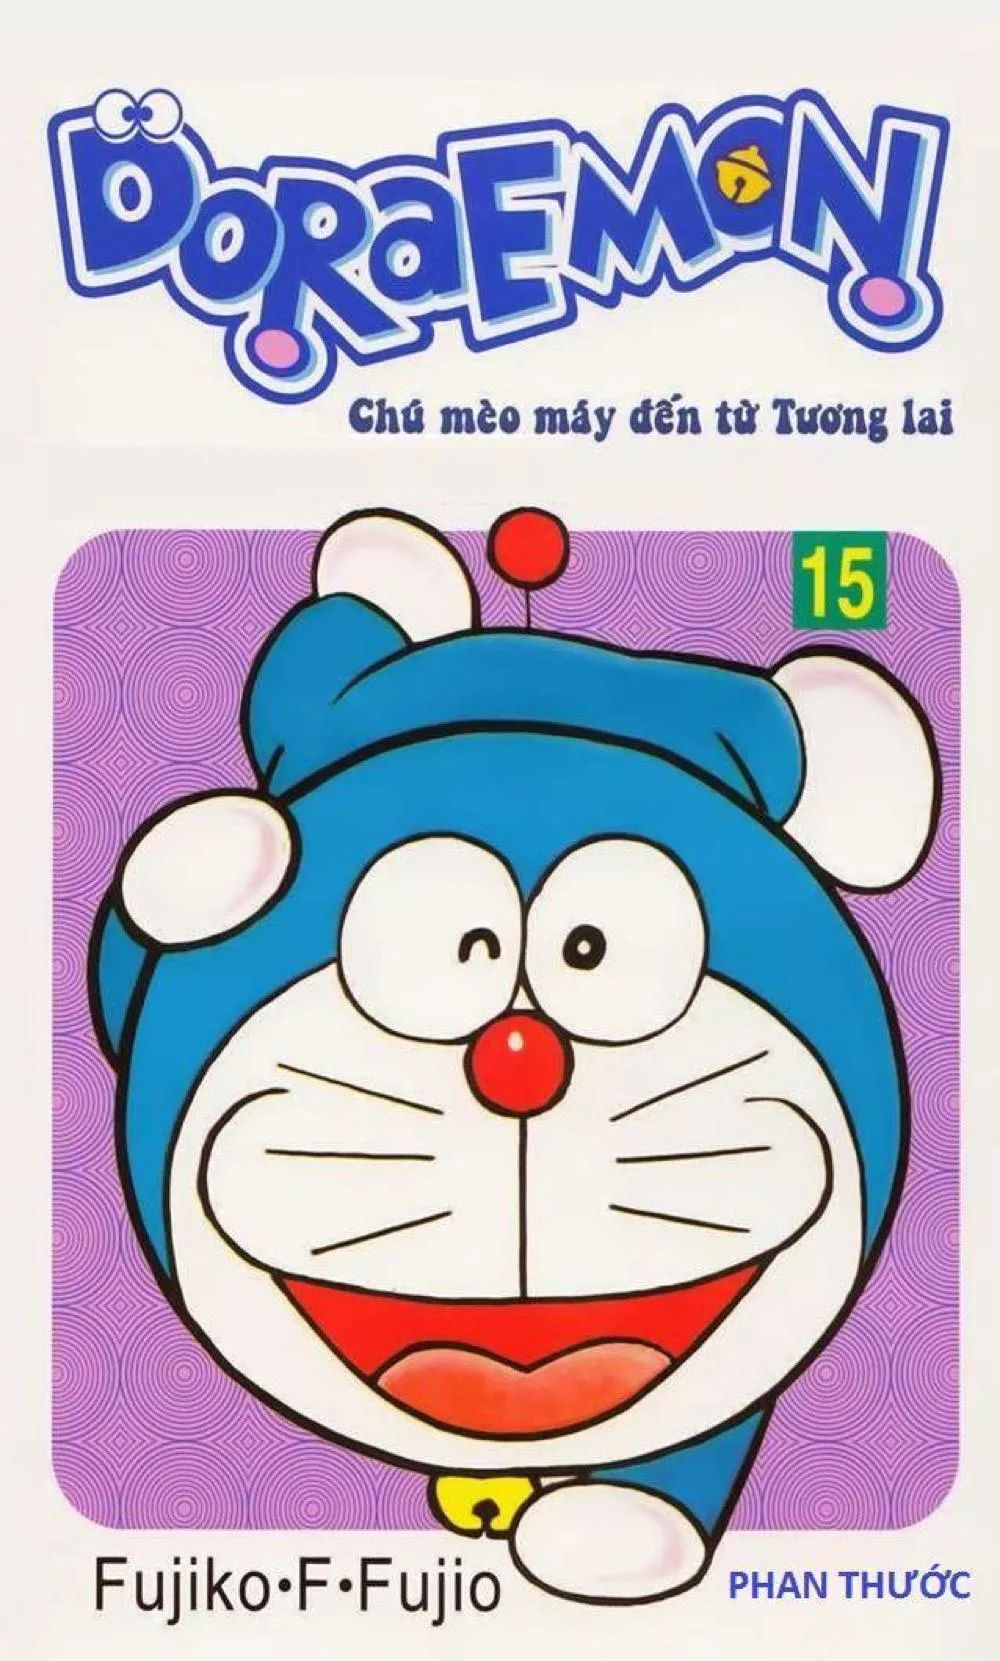 Tại sao nhiều người lại mê tải sách Doraemon? Vì đơn giản, đó là một trải nghiệm tuyệt vời! Bạn sẽ được theo dõi những cuộc phiêu lưu thú vị của Doraemon và những người bạn, và học được nhiều điều bổ ích trong cuộc sống.